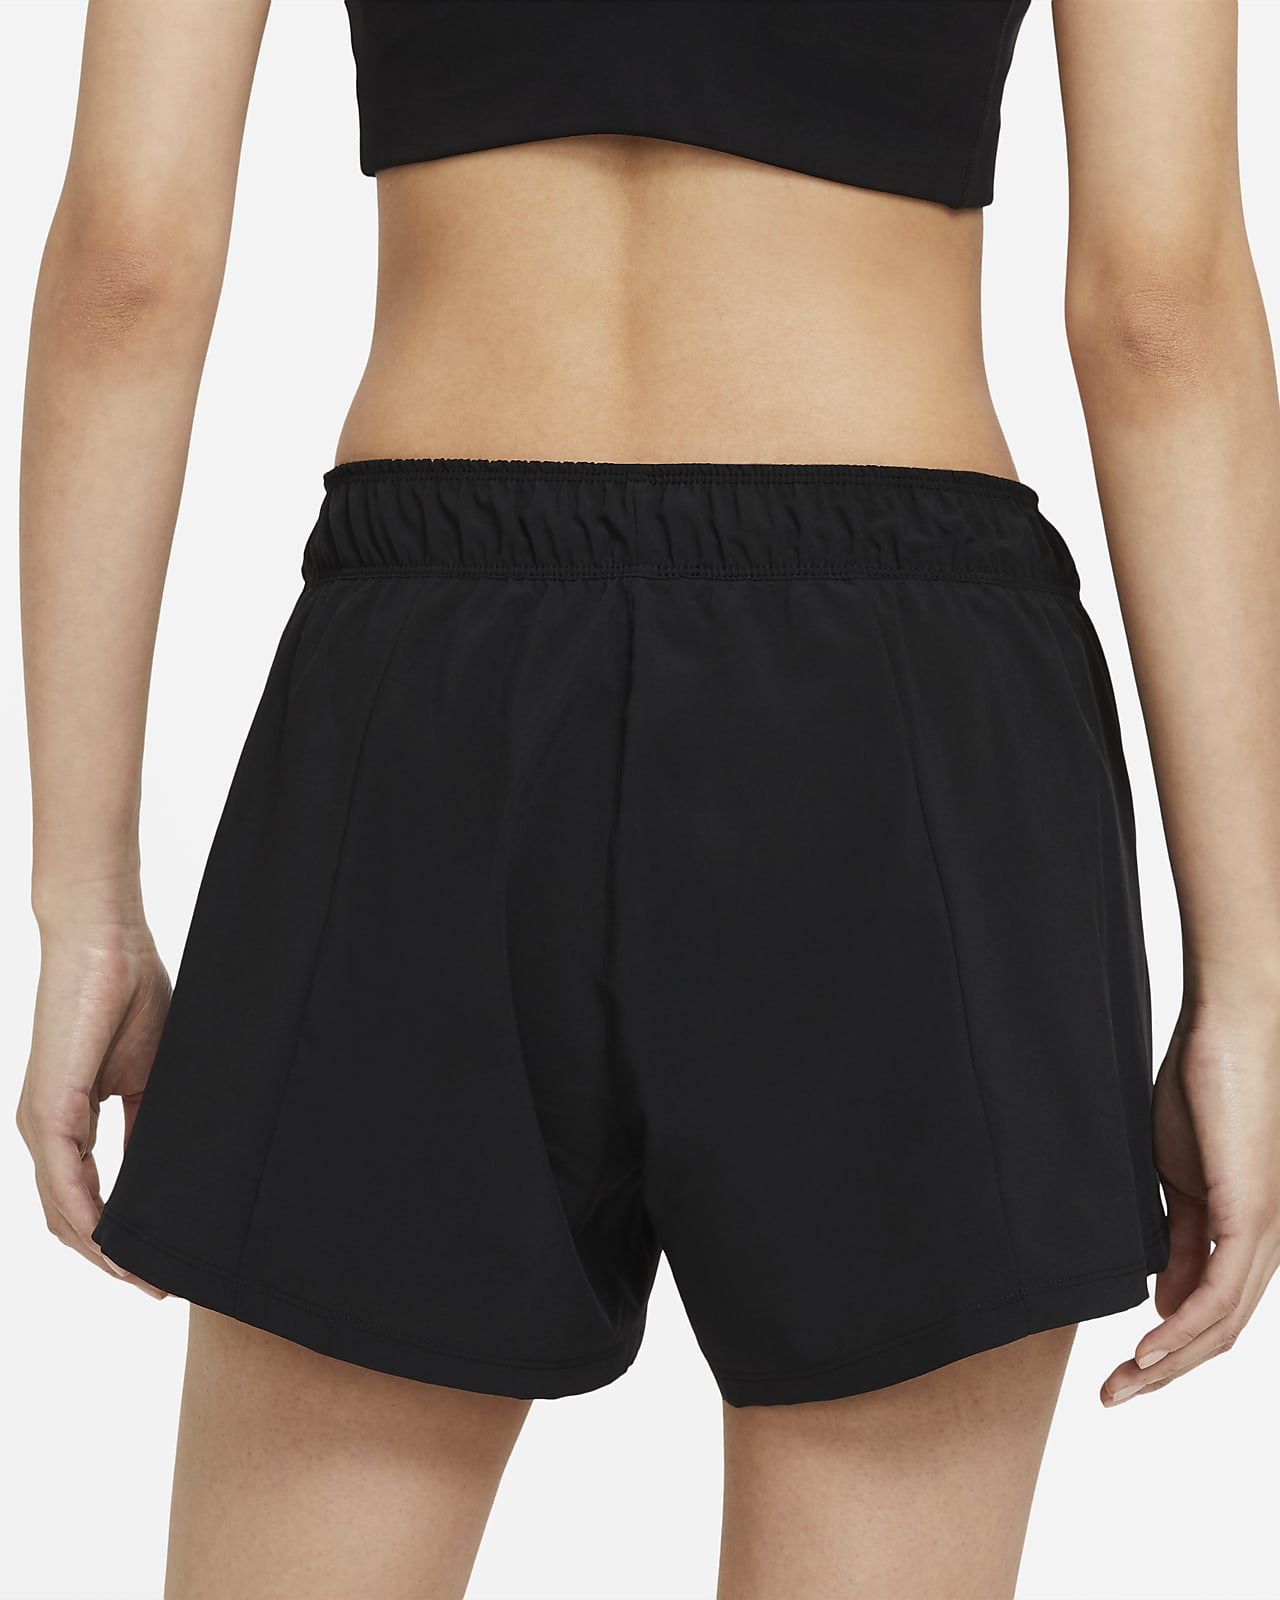 women's nike flex 2 in 1 shorts